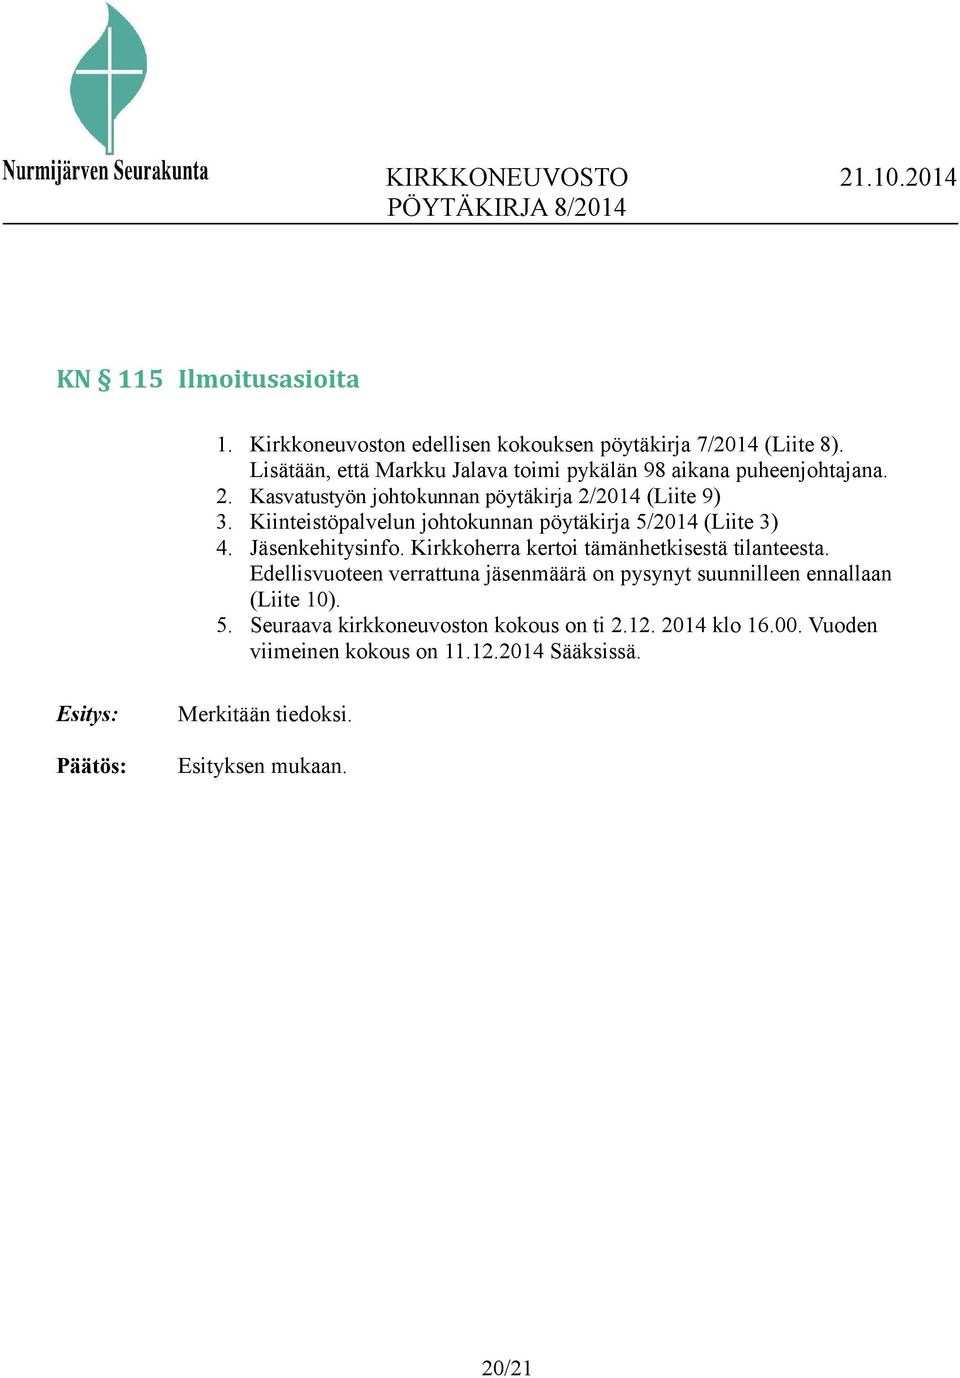 Kiinteistöpalvelun johtokunnan pöytäkirja 5/2014 (Liite 3) 4. Jäsenkehitysinfo. Kirkkoherra kertoi tämänhetkisestä tilanteesta.